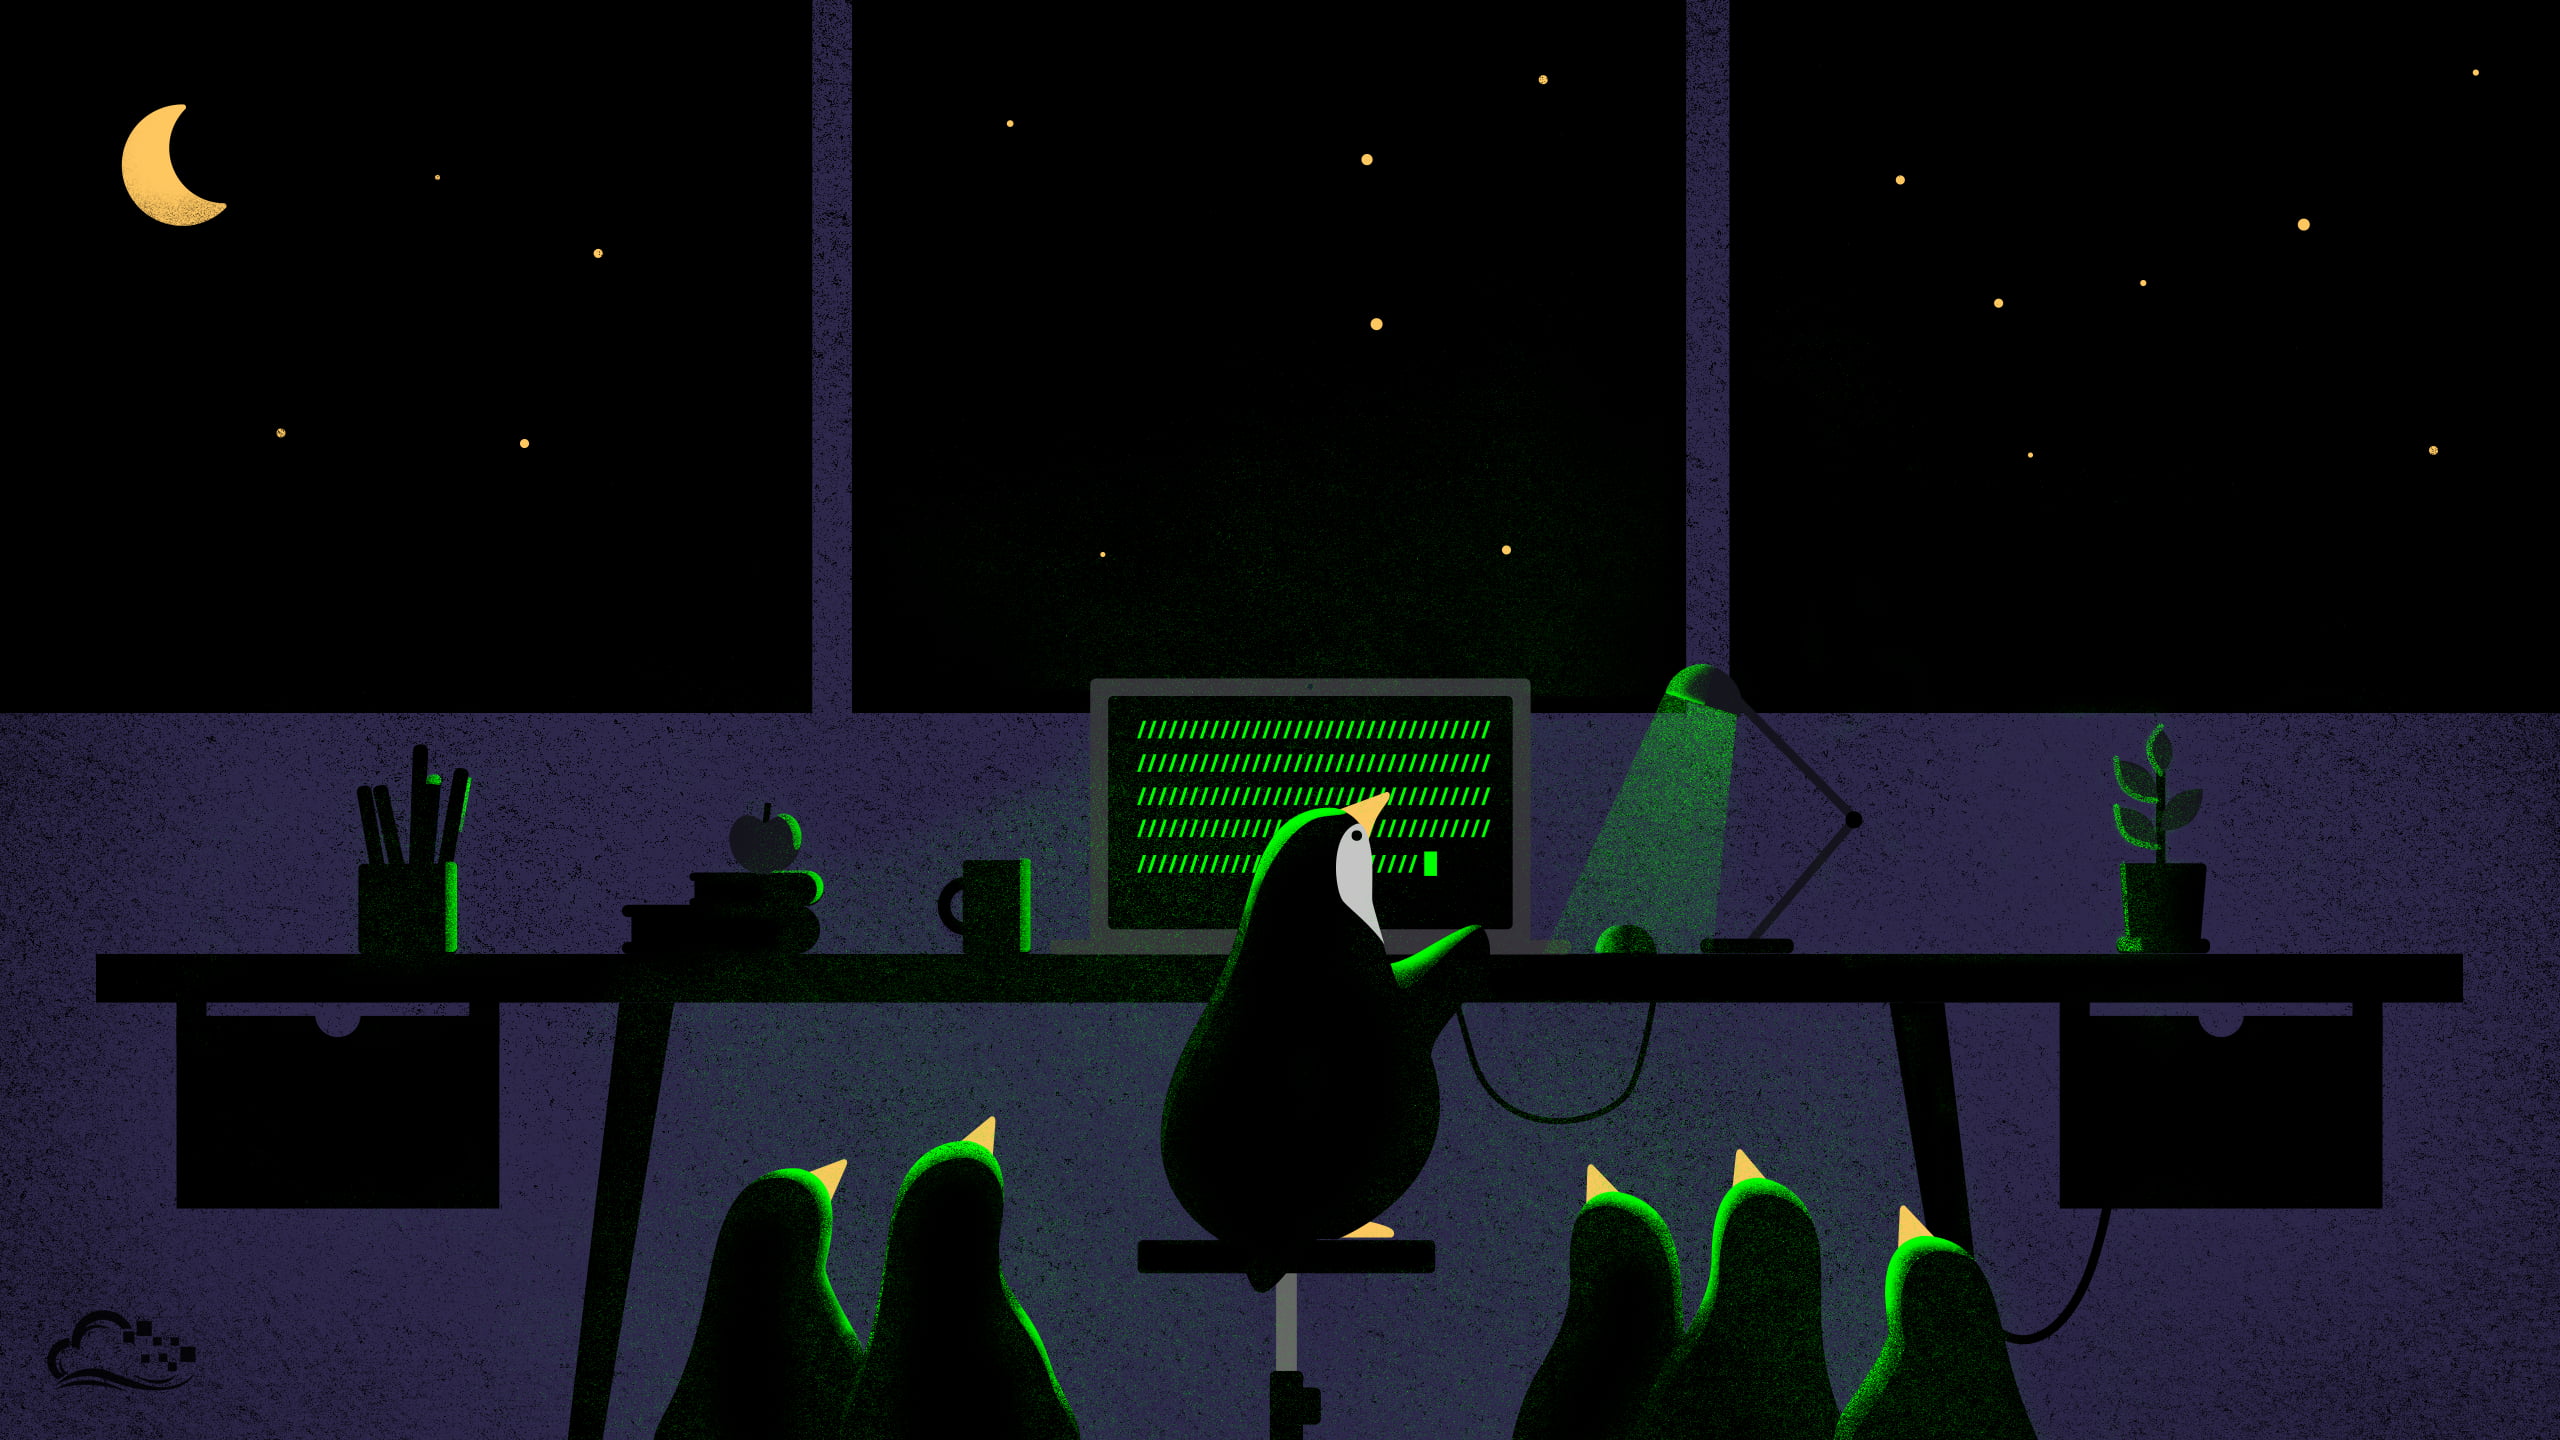 penguins near black desk illustration, digitalocean, night, computer